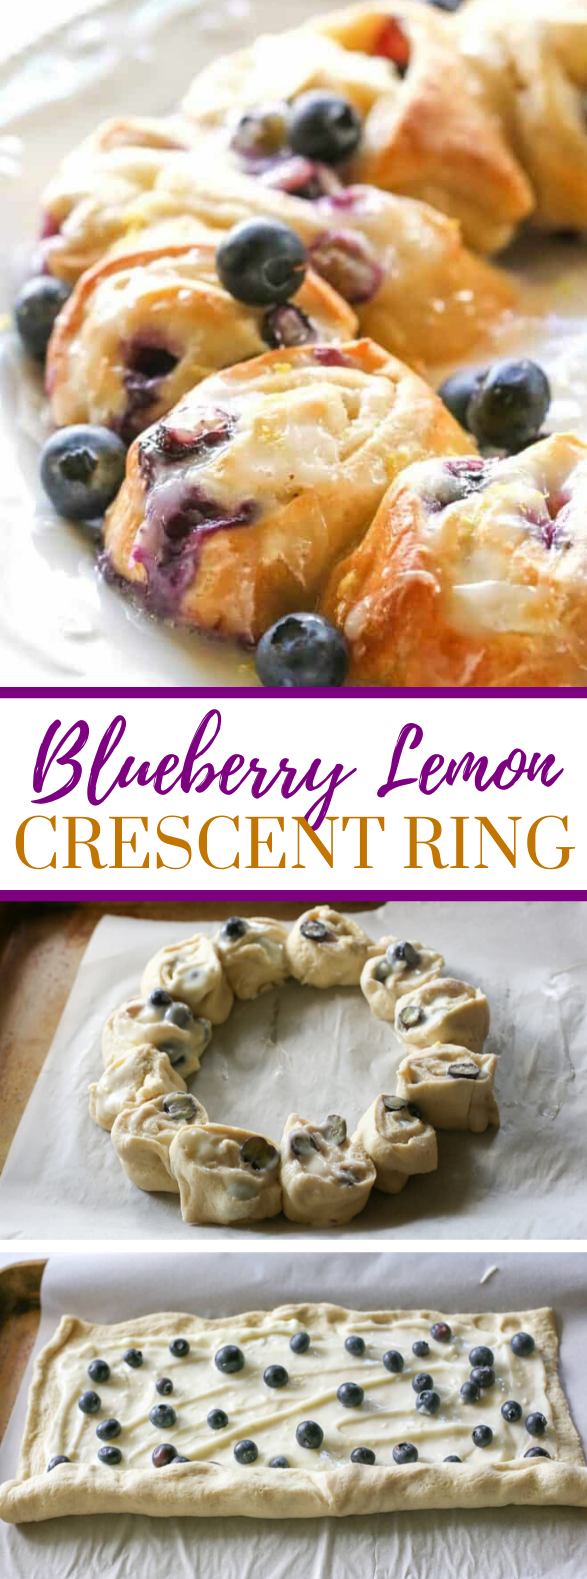 BLUEBERRY LEMON CRESCENT RING #desserts #breakfast